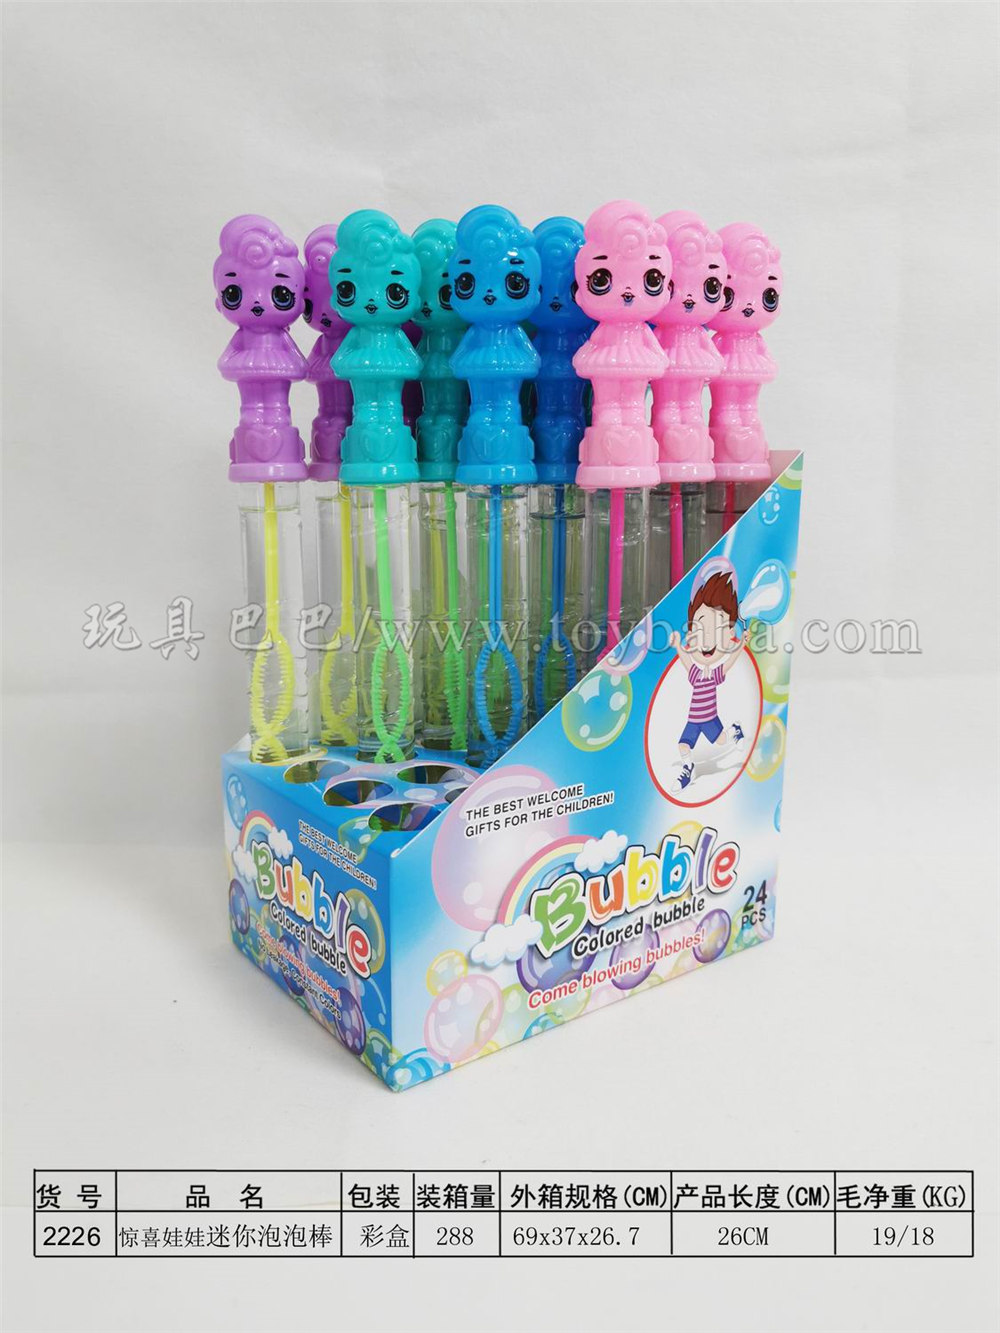 26cm surprise doll bubble stick 24pcs / box (4 colors)